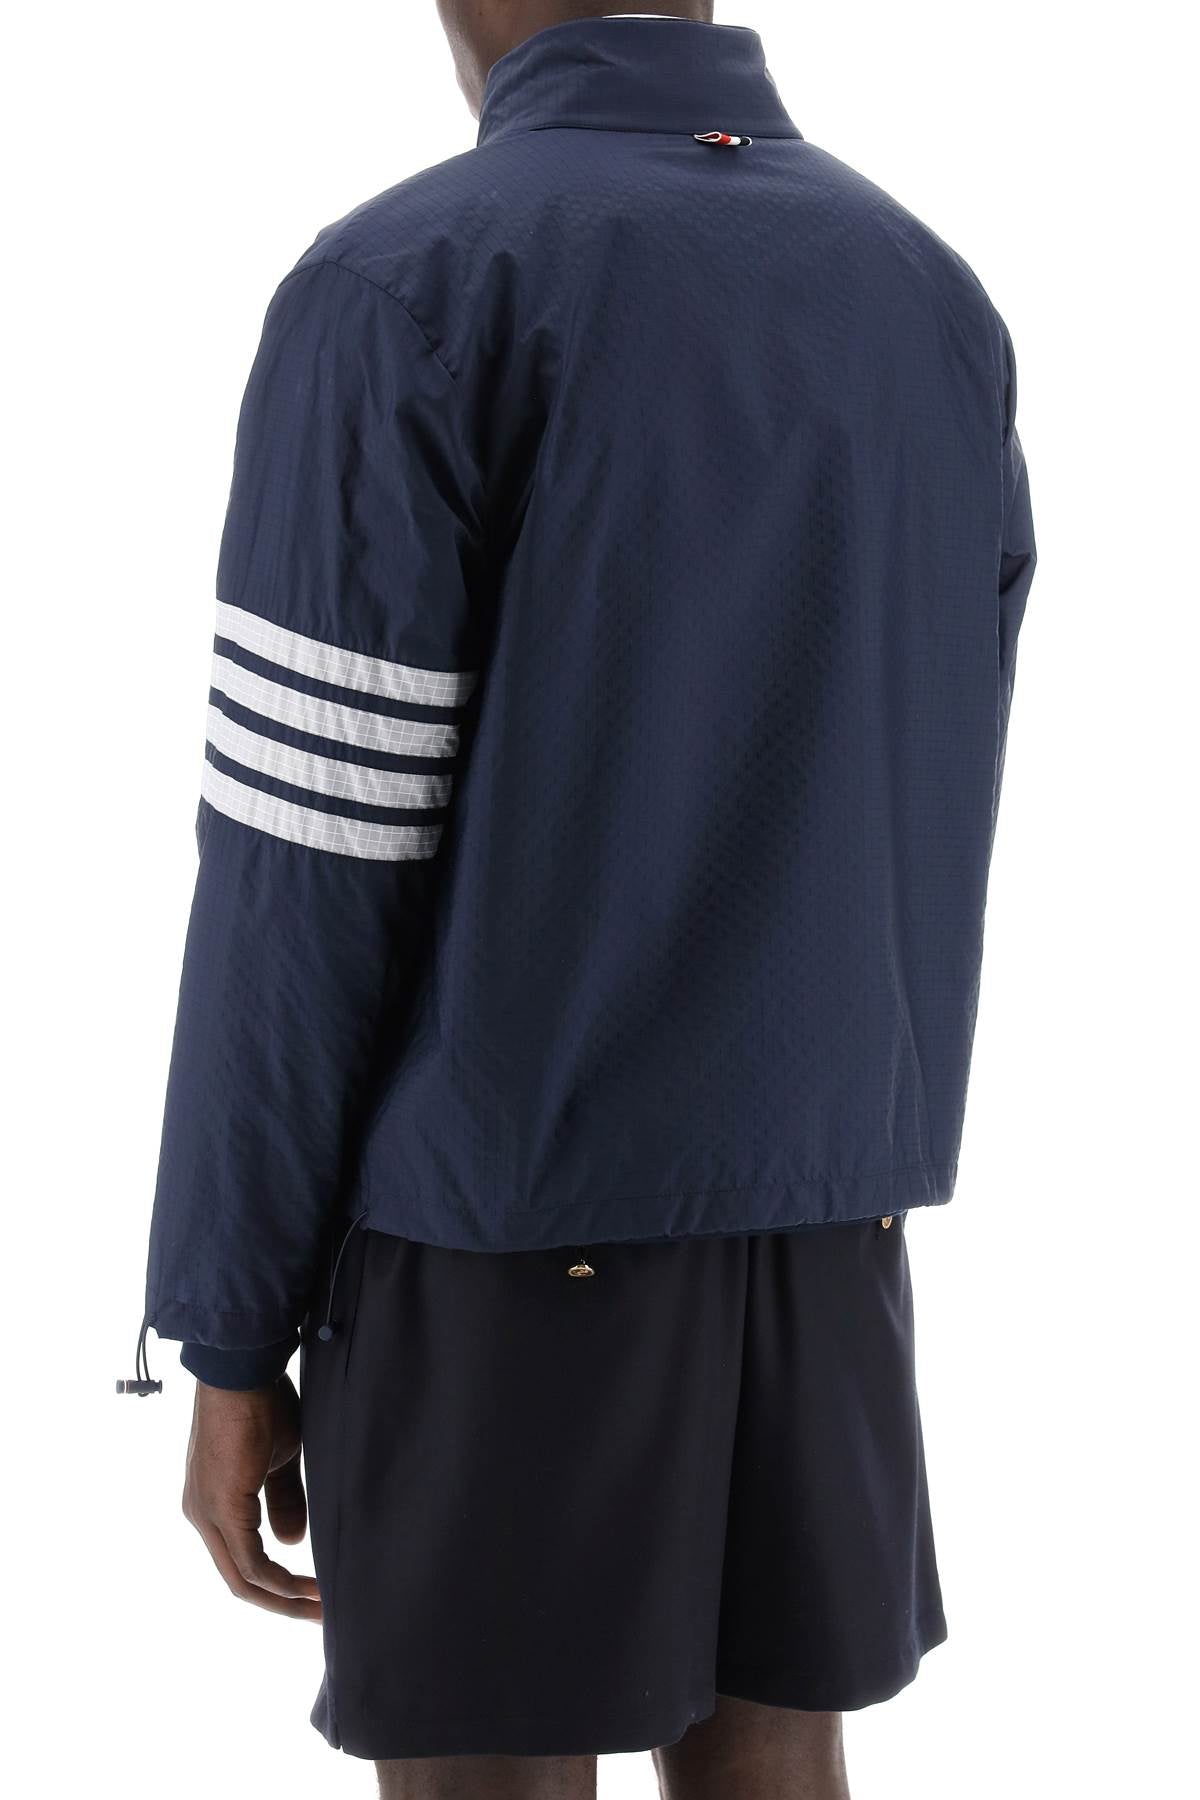 Thom Browne Thom browne 4-bar ripstop windbreaker jacket